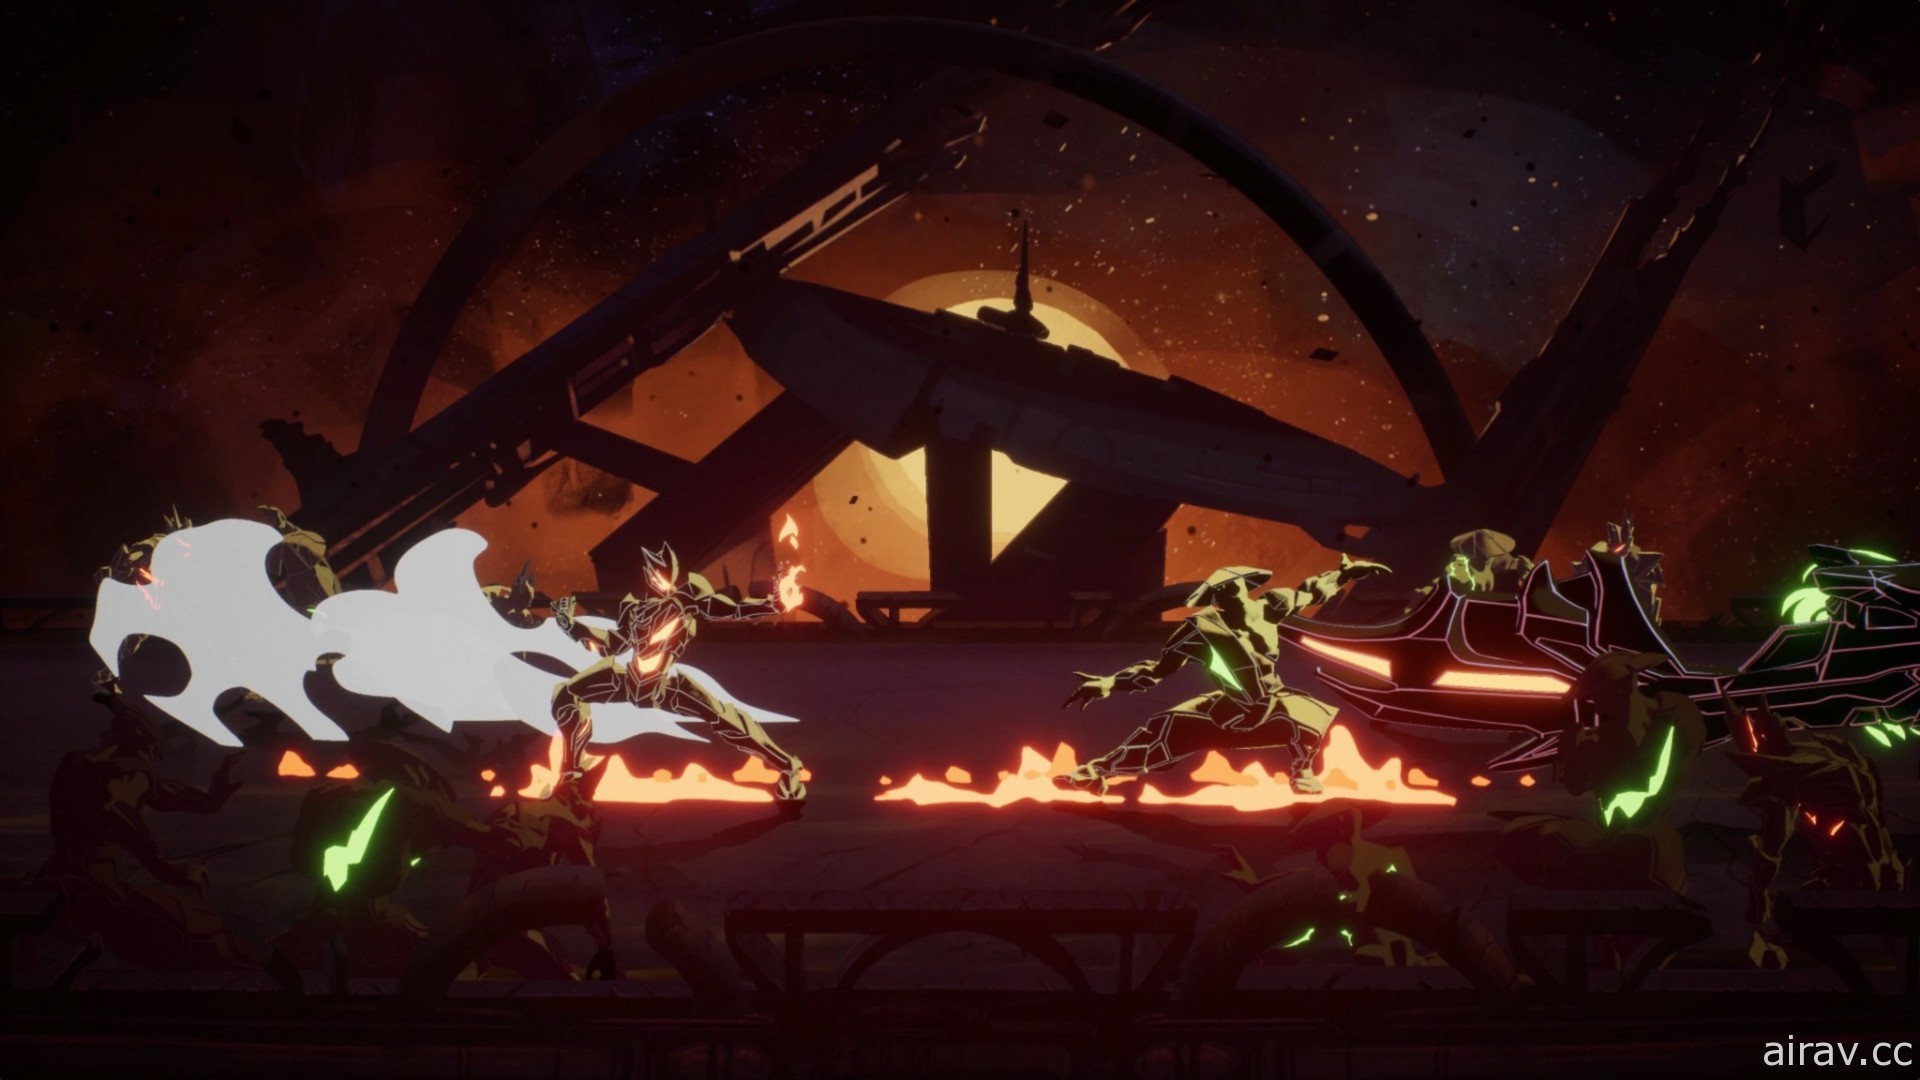 动画风科幻动作游戏《永世大帝必须死》正式发表 与寄生铠甲共同面对各方势力挑战